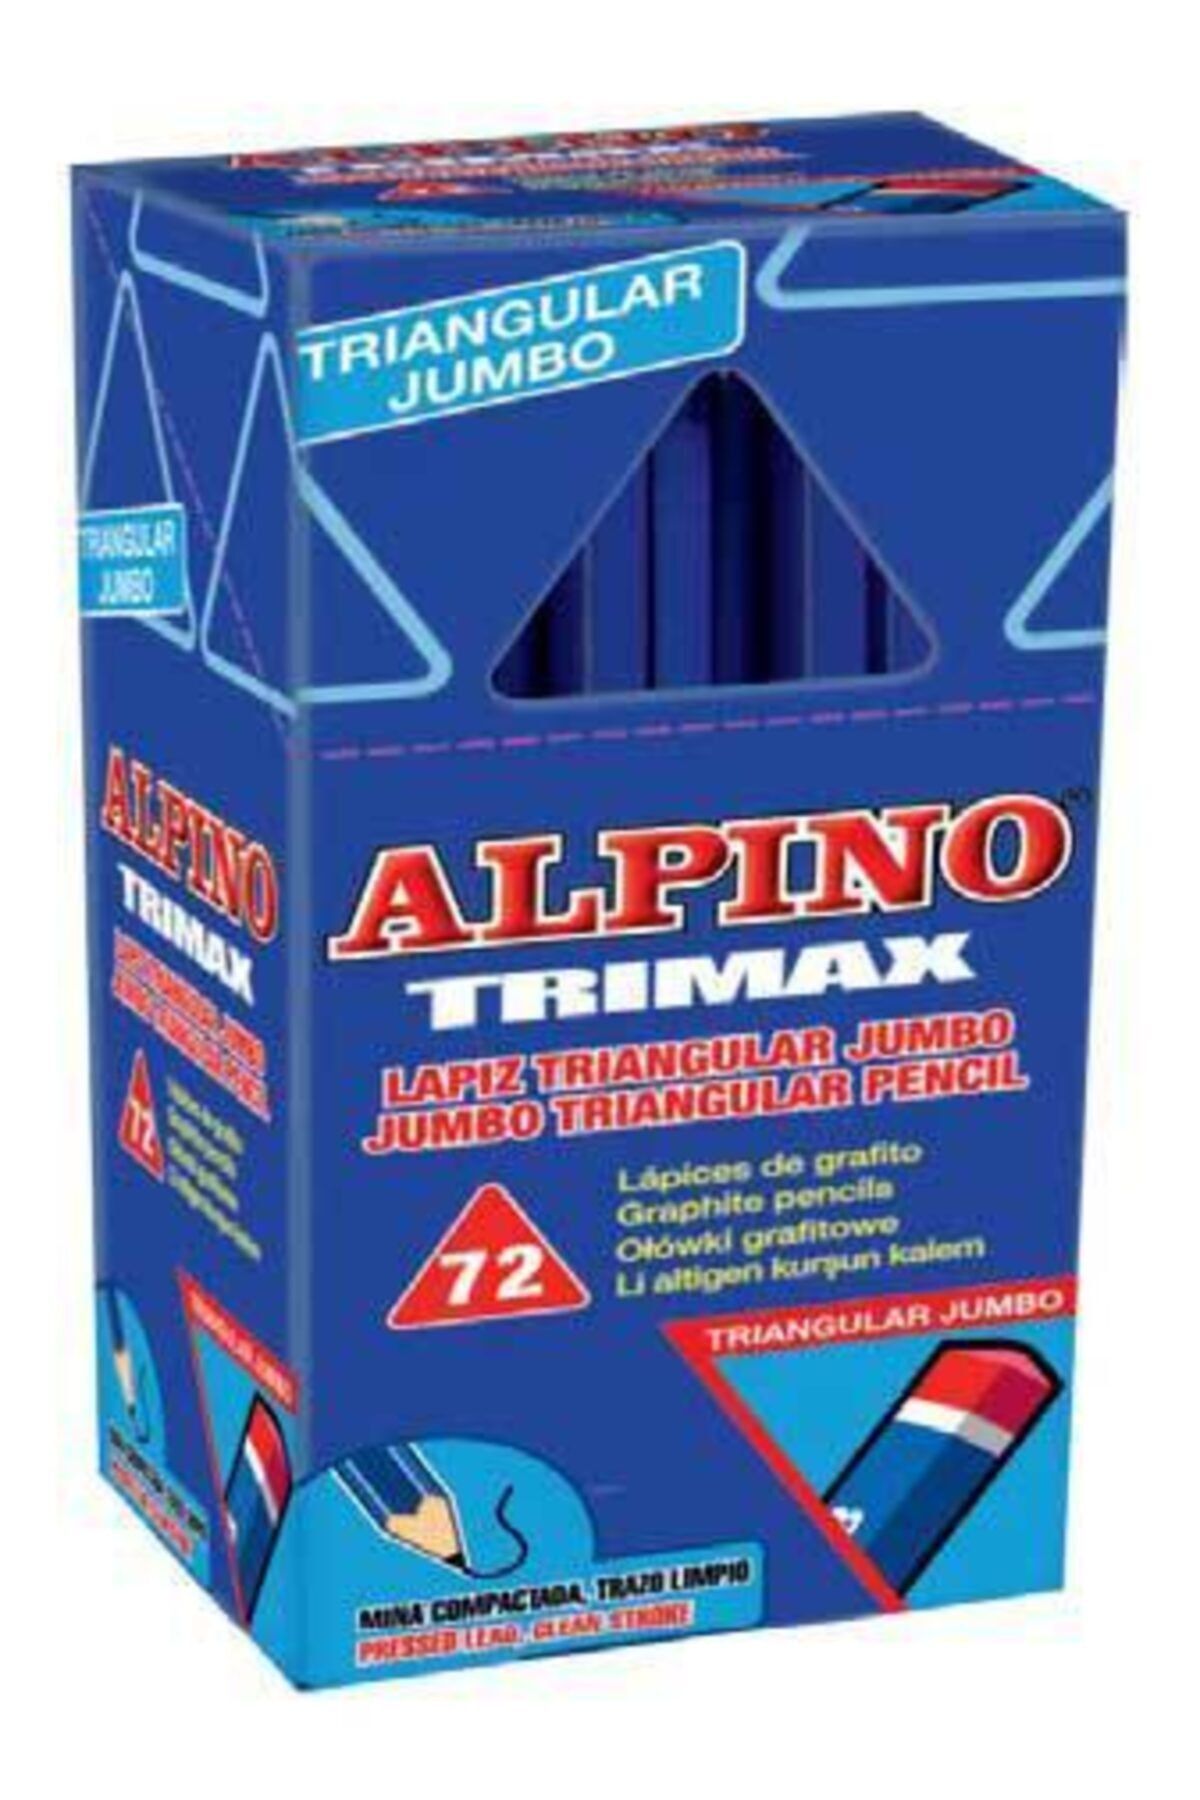 Alpino Alpino Trimax Kurşunkalem Ju-017 72 Li Kutu (1 Paket 72 Adet)